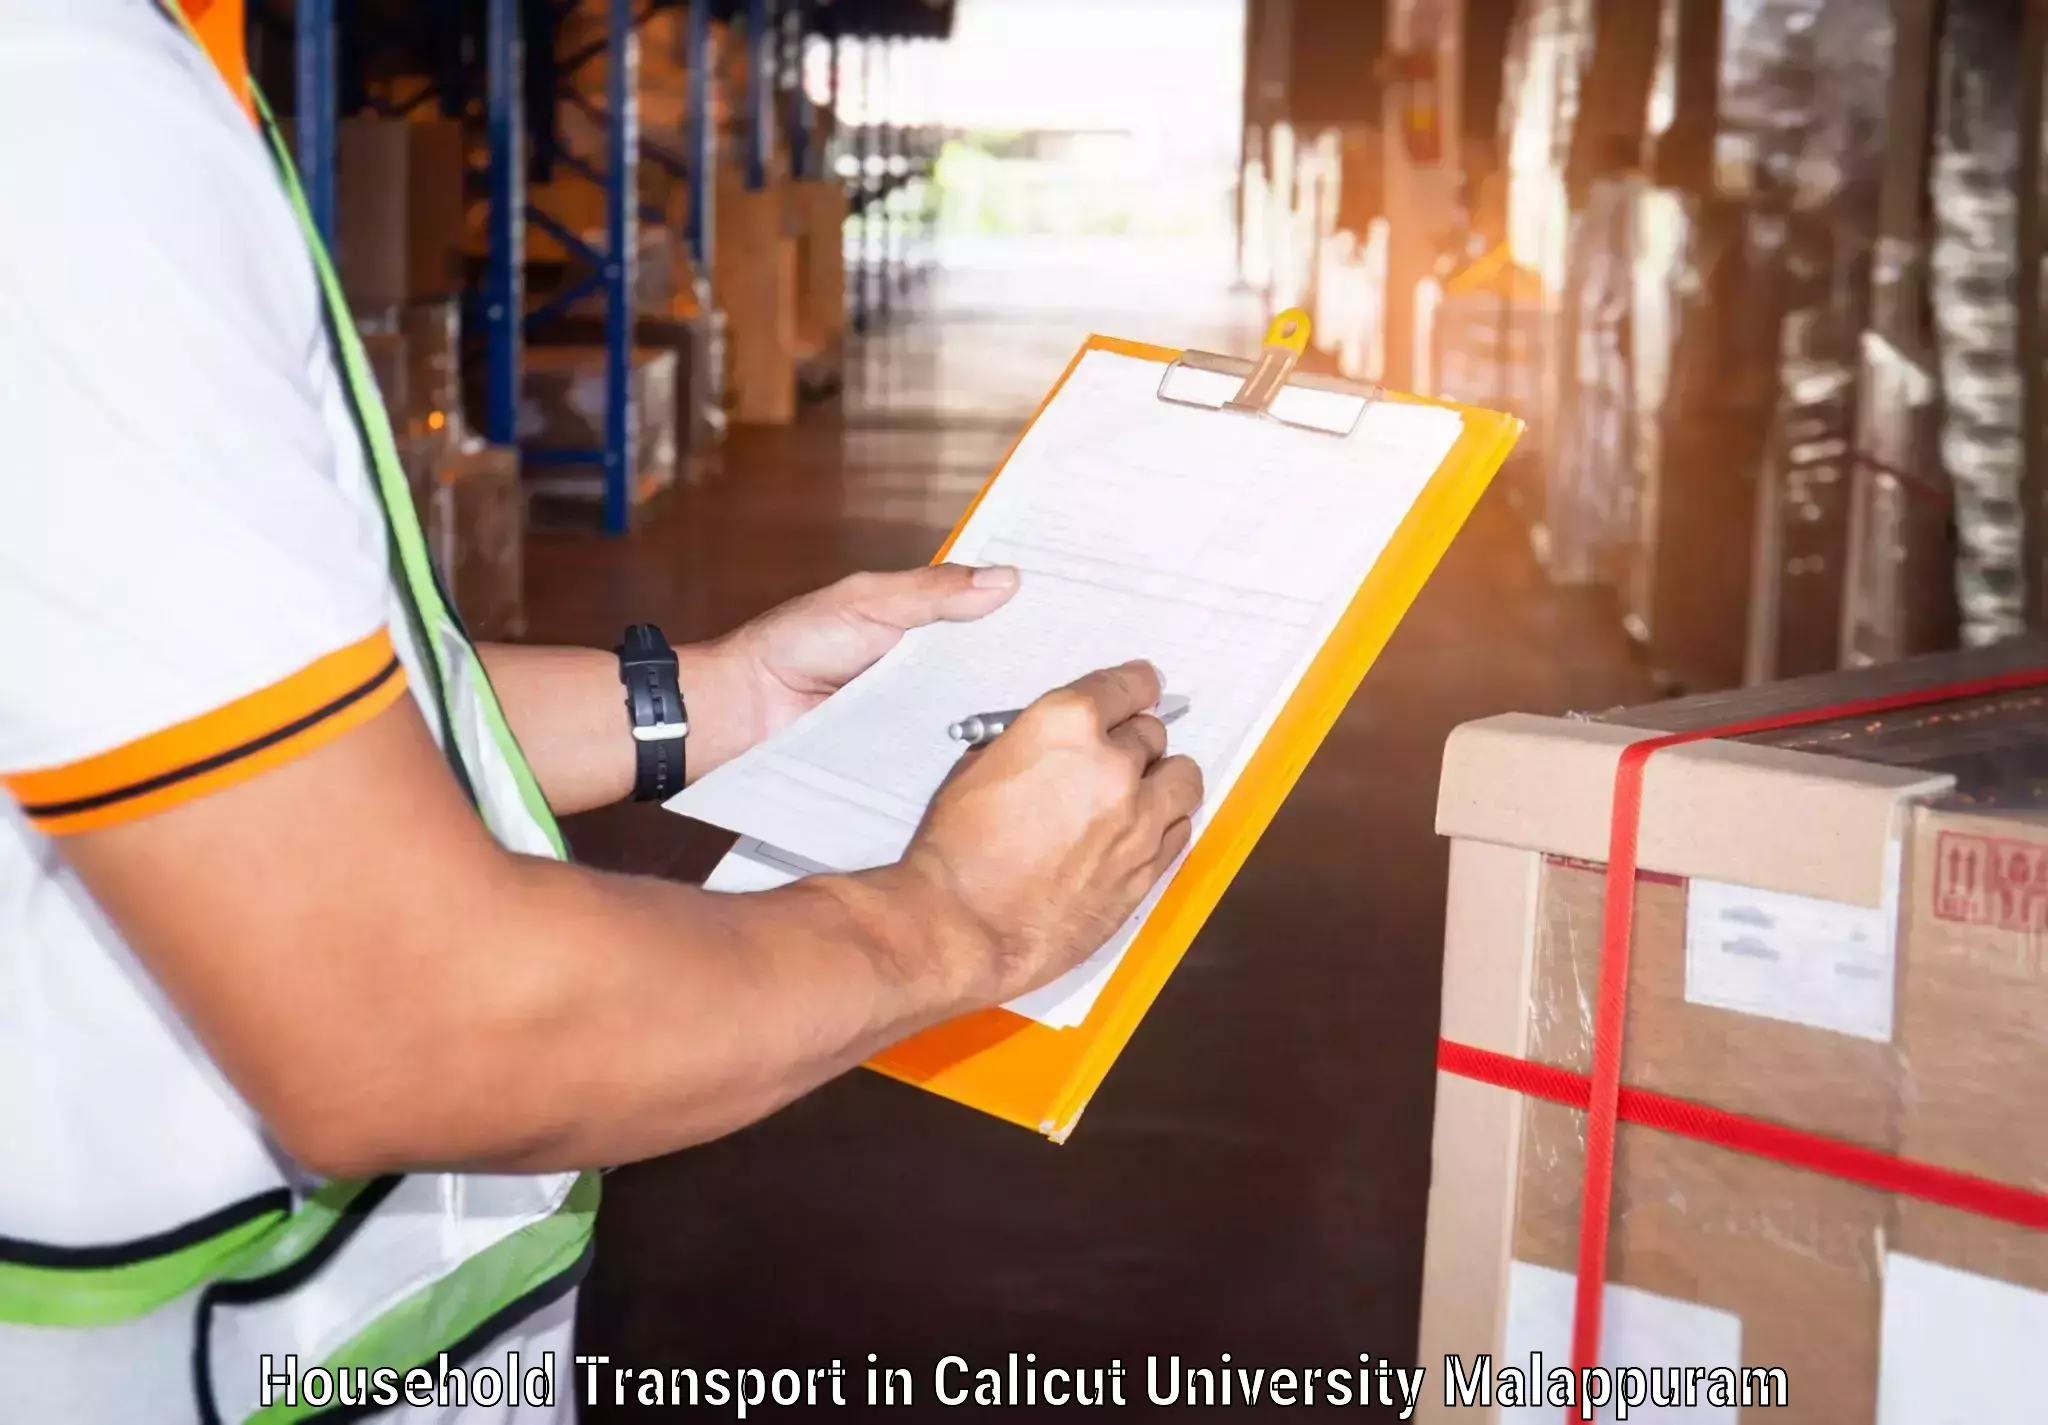 Household goods transporters in Calicut University Malappuram